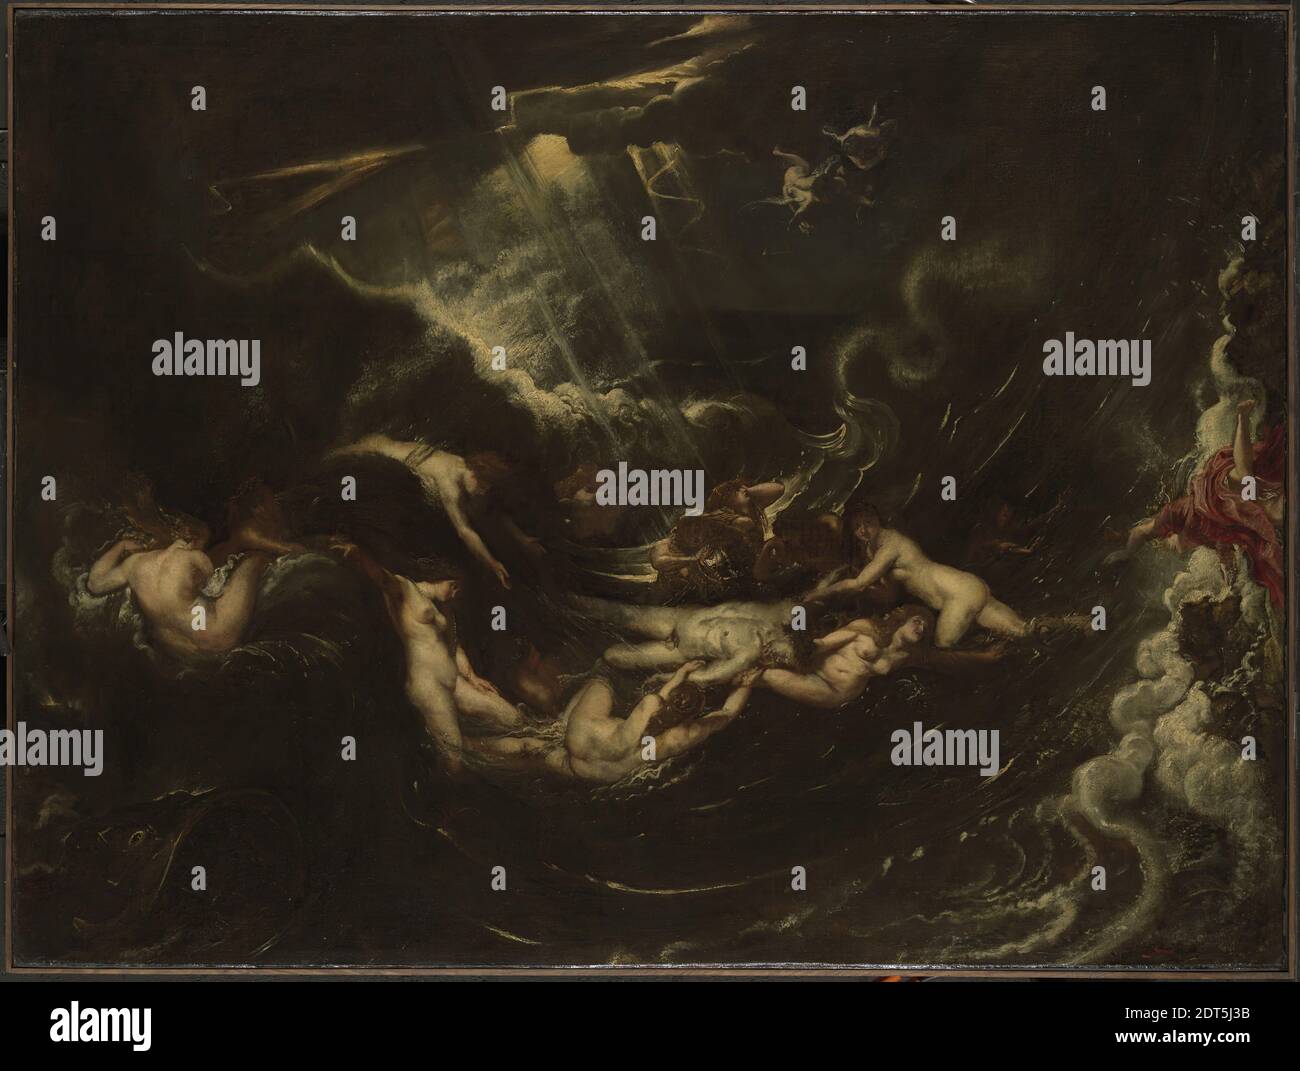 Artiste: Peter Paul Rubens, flamand, 1577–1640, héros et Leander, vers 1604, huile sur toile, 95.9 × 128 cm, 31.75 kg (37 3/4 × 50 3/8 po, 70 lb.), cette peinture illustre la légende grecque ancienne de Leander, Qui a nagé le Hellespont pour des rencontres de minuit avec son héros bien-aimé, gardien des colombes et des moineaux d'Aphrodite. Lors d'une nuit fatal de tempête, il périt dans les vagues, et le héros désespéré se jeta dans la mer pour se joindre à lui dans la mort. Le tableau est un exemple important des premiers travaux de Rubens en Italie, où il a développé son intérêt pour le sujet classique et mythologique Banque D'Images